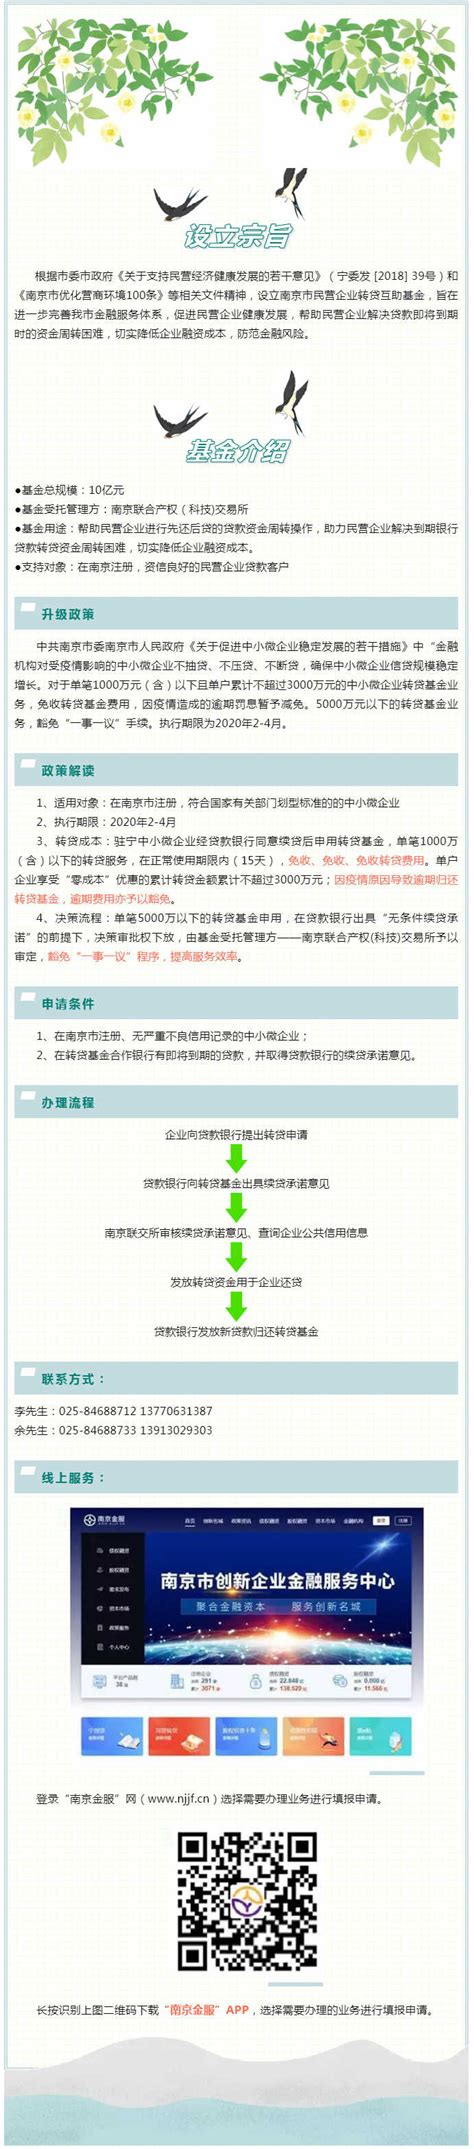 南京市鼓楼区人民政府 南京市民营企业转贷互助基金办理流程（图解）